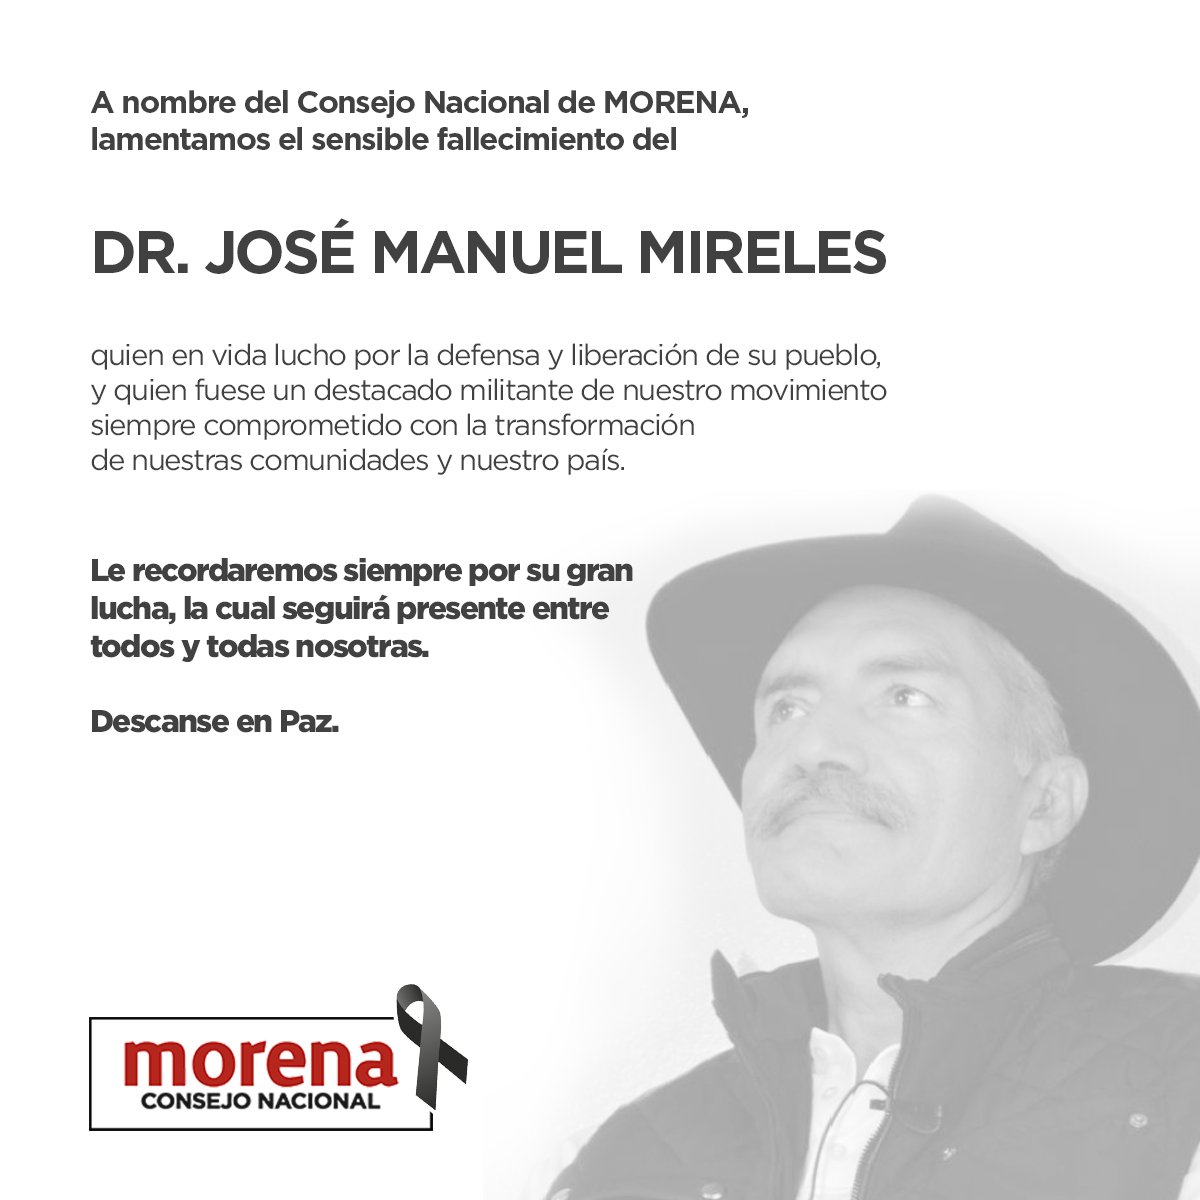 A nombre del @ConsejoMorenaMX lamentamos el sensible fallecimiento del compañero luchador social y activista de nuestro movimiento, el @DrJMMireles. Acompañamos a sus familiares, amigos y seres queridos en estos momentos a quienes les enviamos un abrazo fraterno. Descanse en paz.